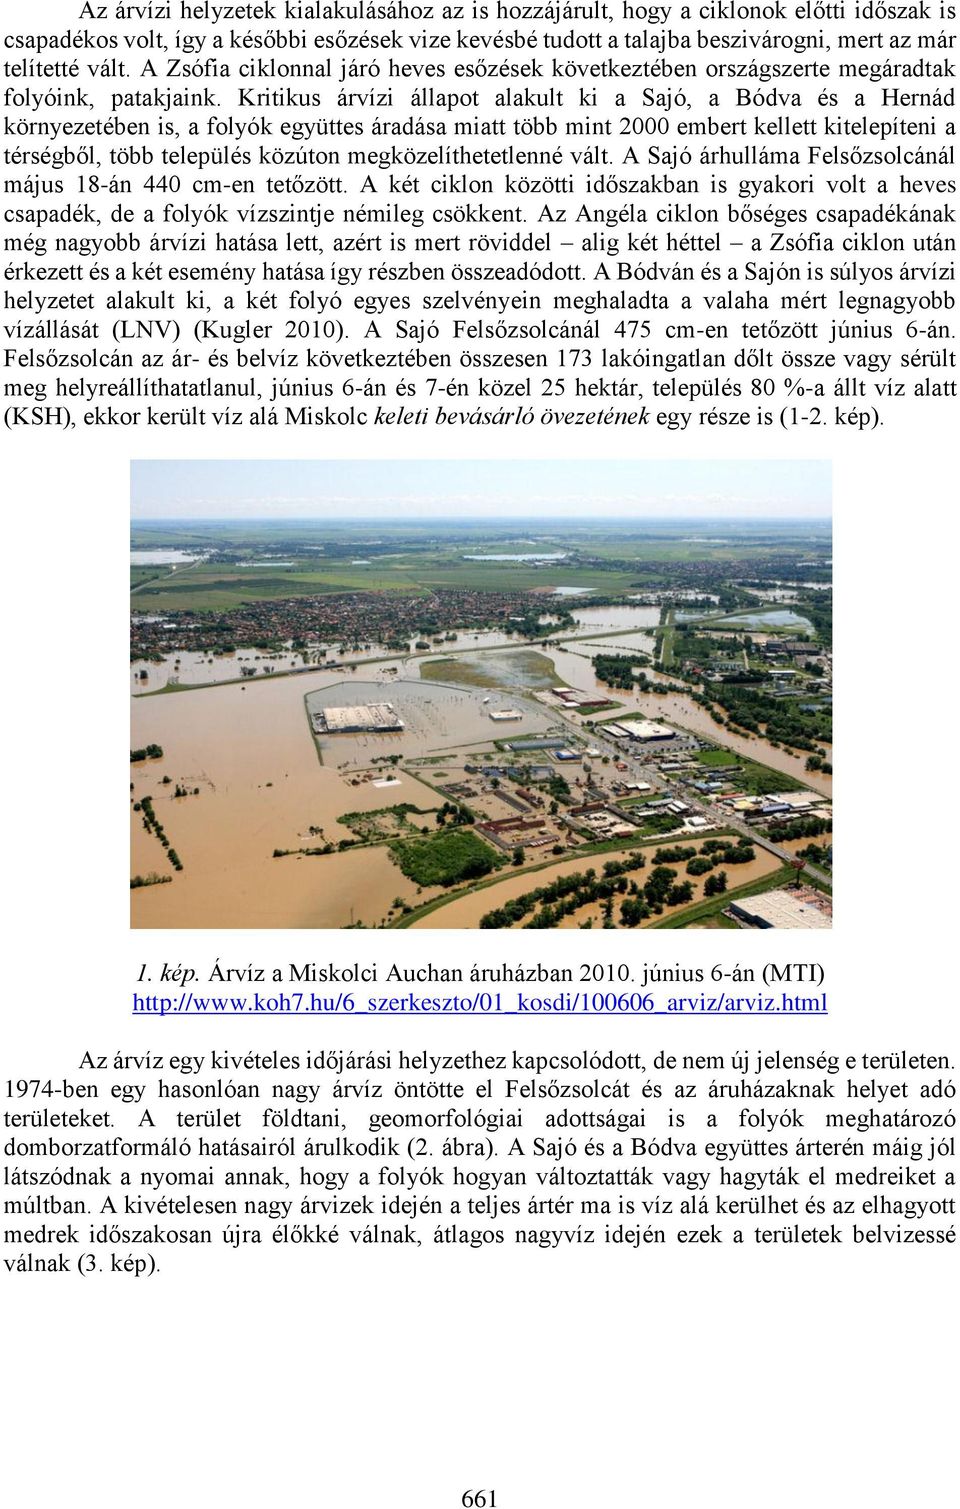 Kritikus árvízi állapot alakult ki a Sajó, a Bódva és a Hernád környezetében is, a folyók együttes áradása miatt több mint 2000 embert kellett kitelepíteni a térségből, több település közúton